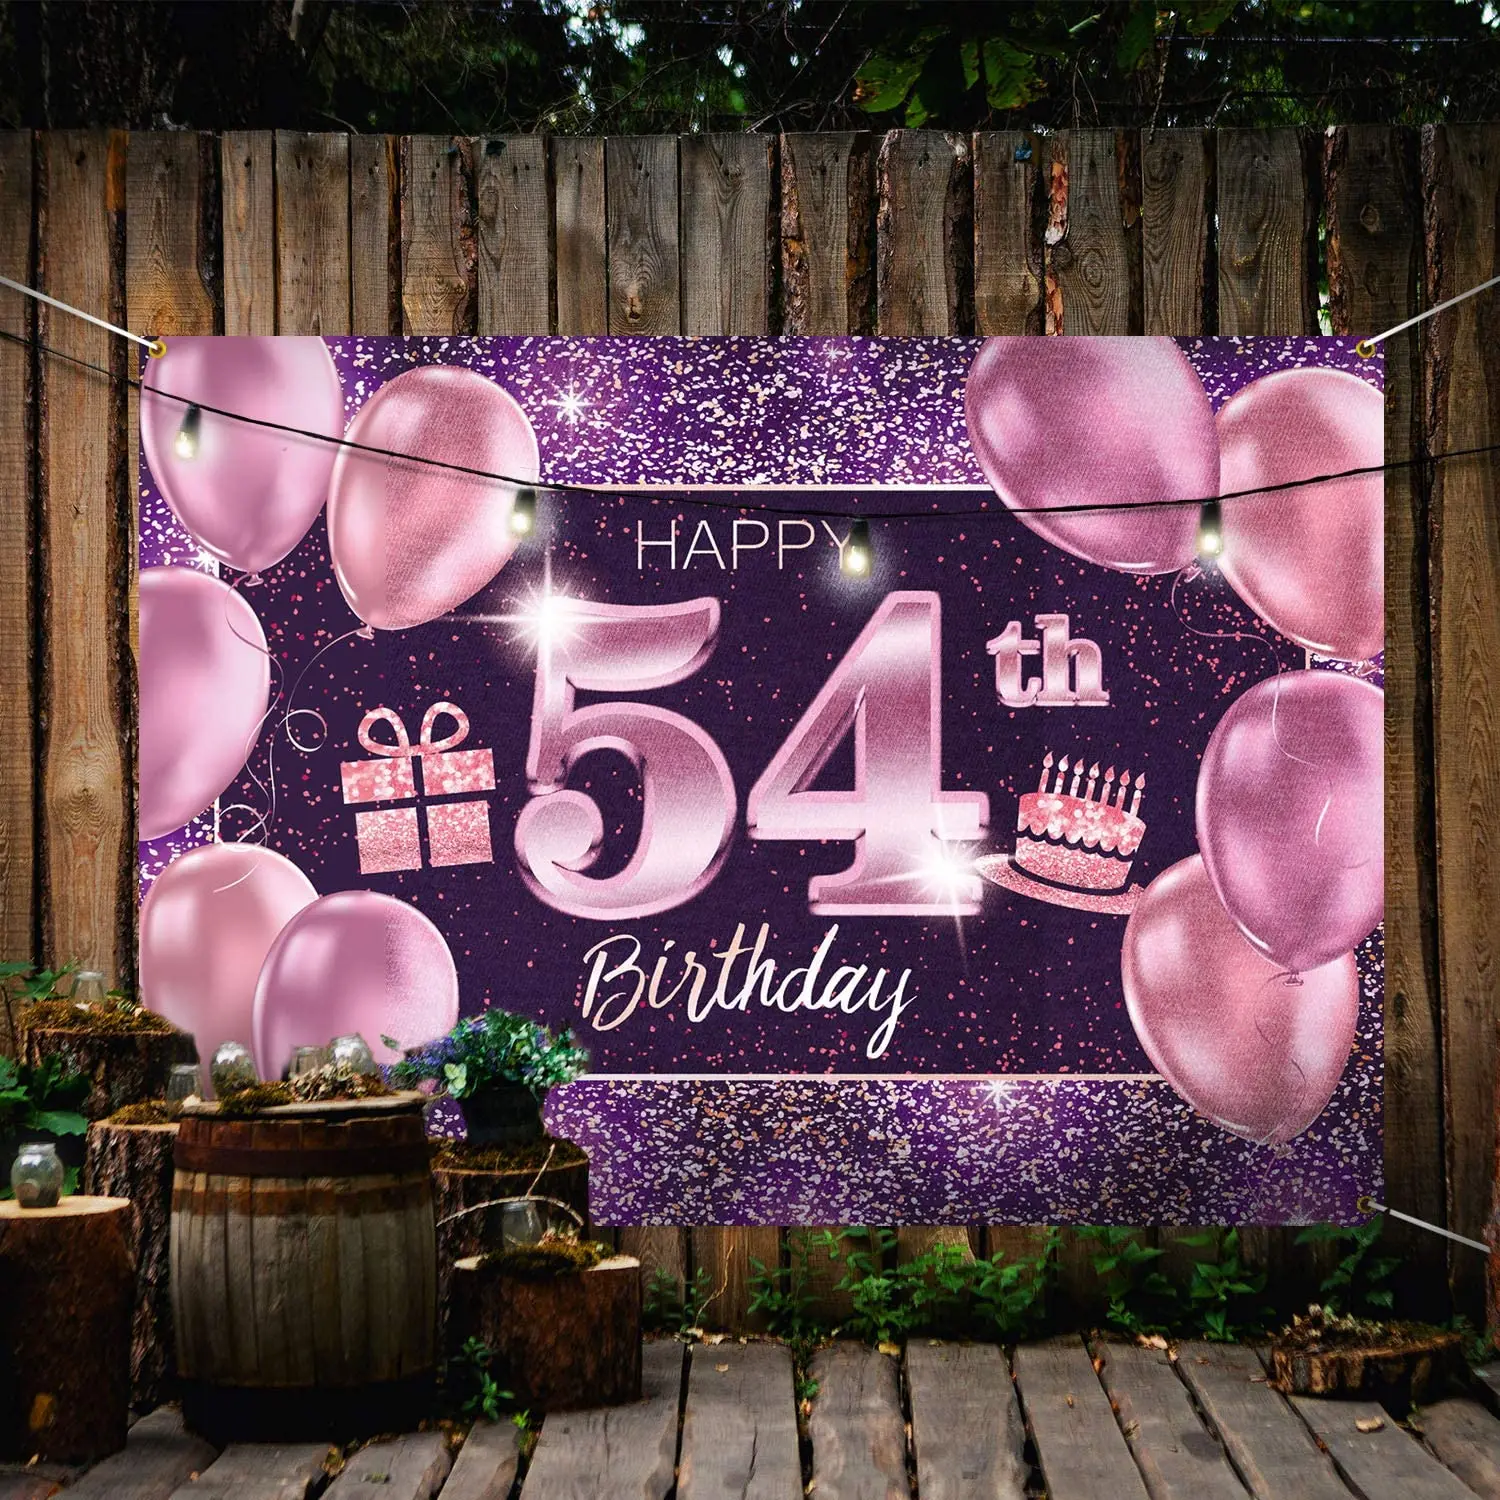 

Баннер для дня рождения 54-54, украшения для дня рождения для женщин-розовое, фиолетовое, золотое